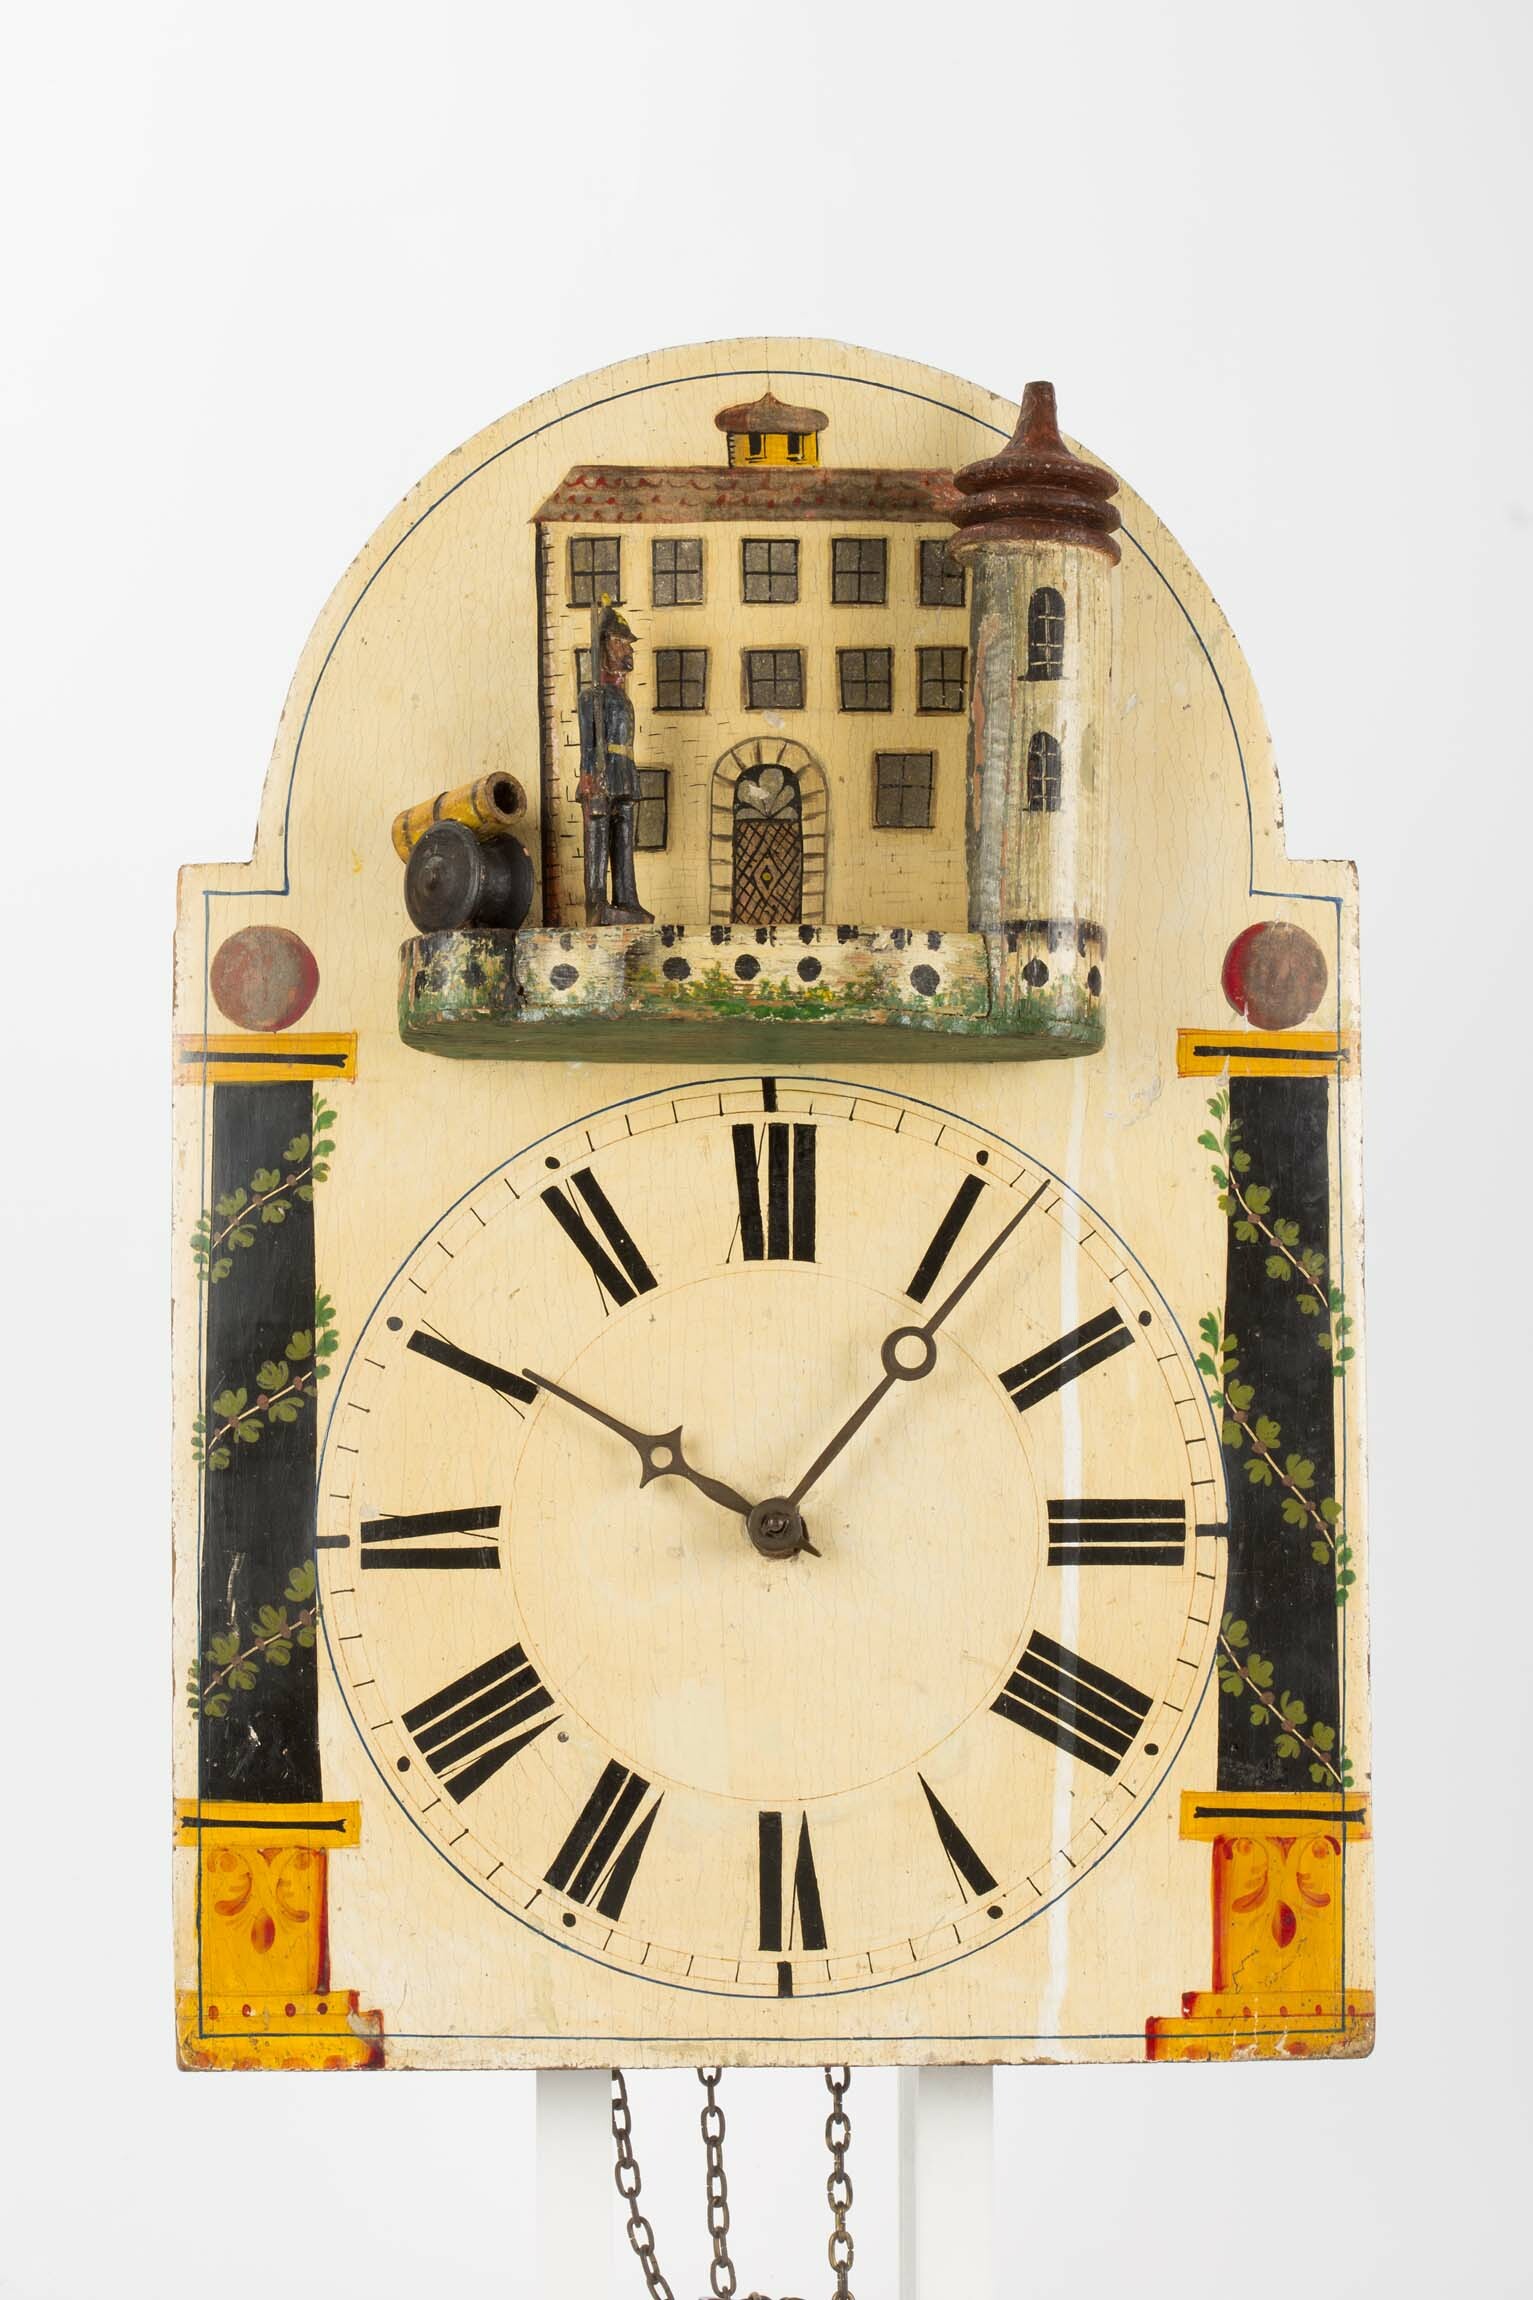 Lackschilduhr mit Schildwache, Schwarzwald, um 1860 (Deutsches Uhrenmuseum CC BY-SA)